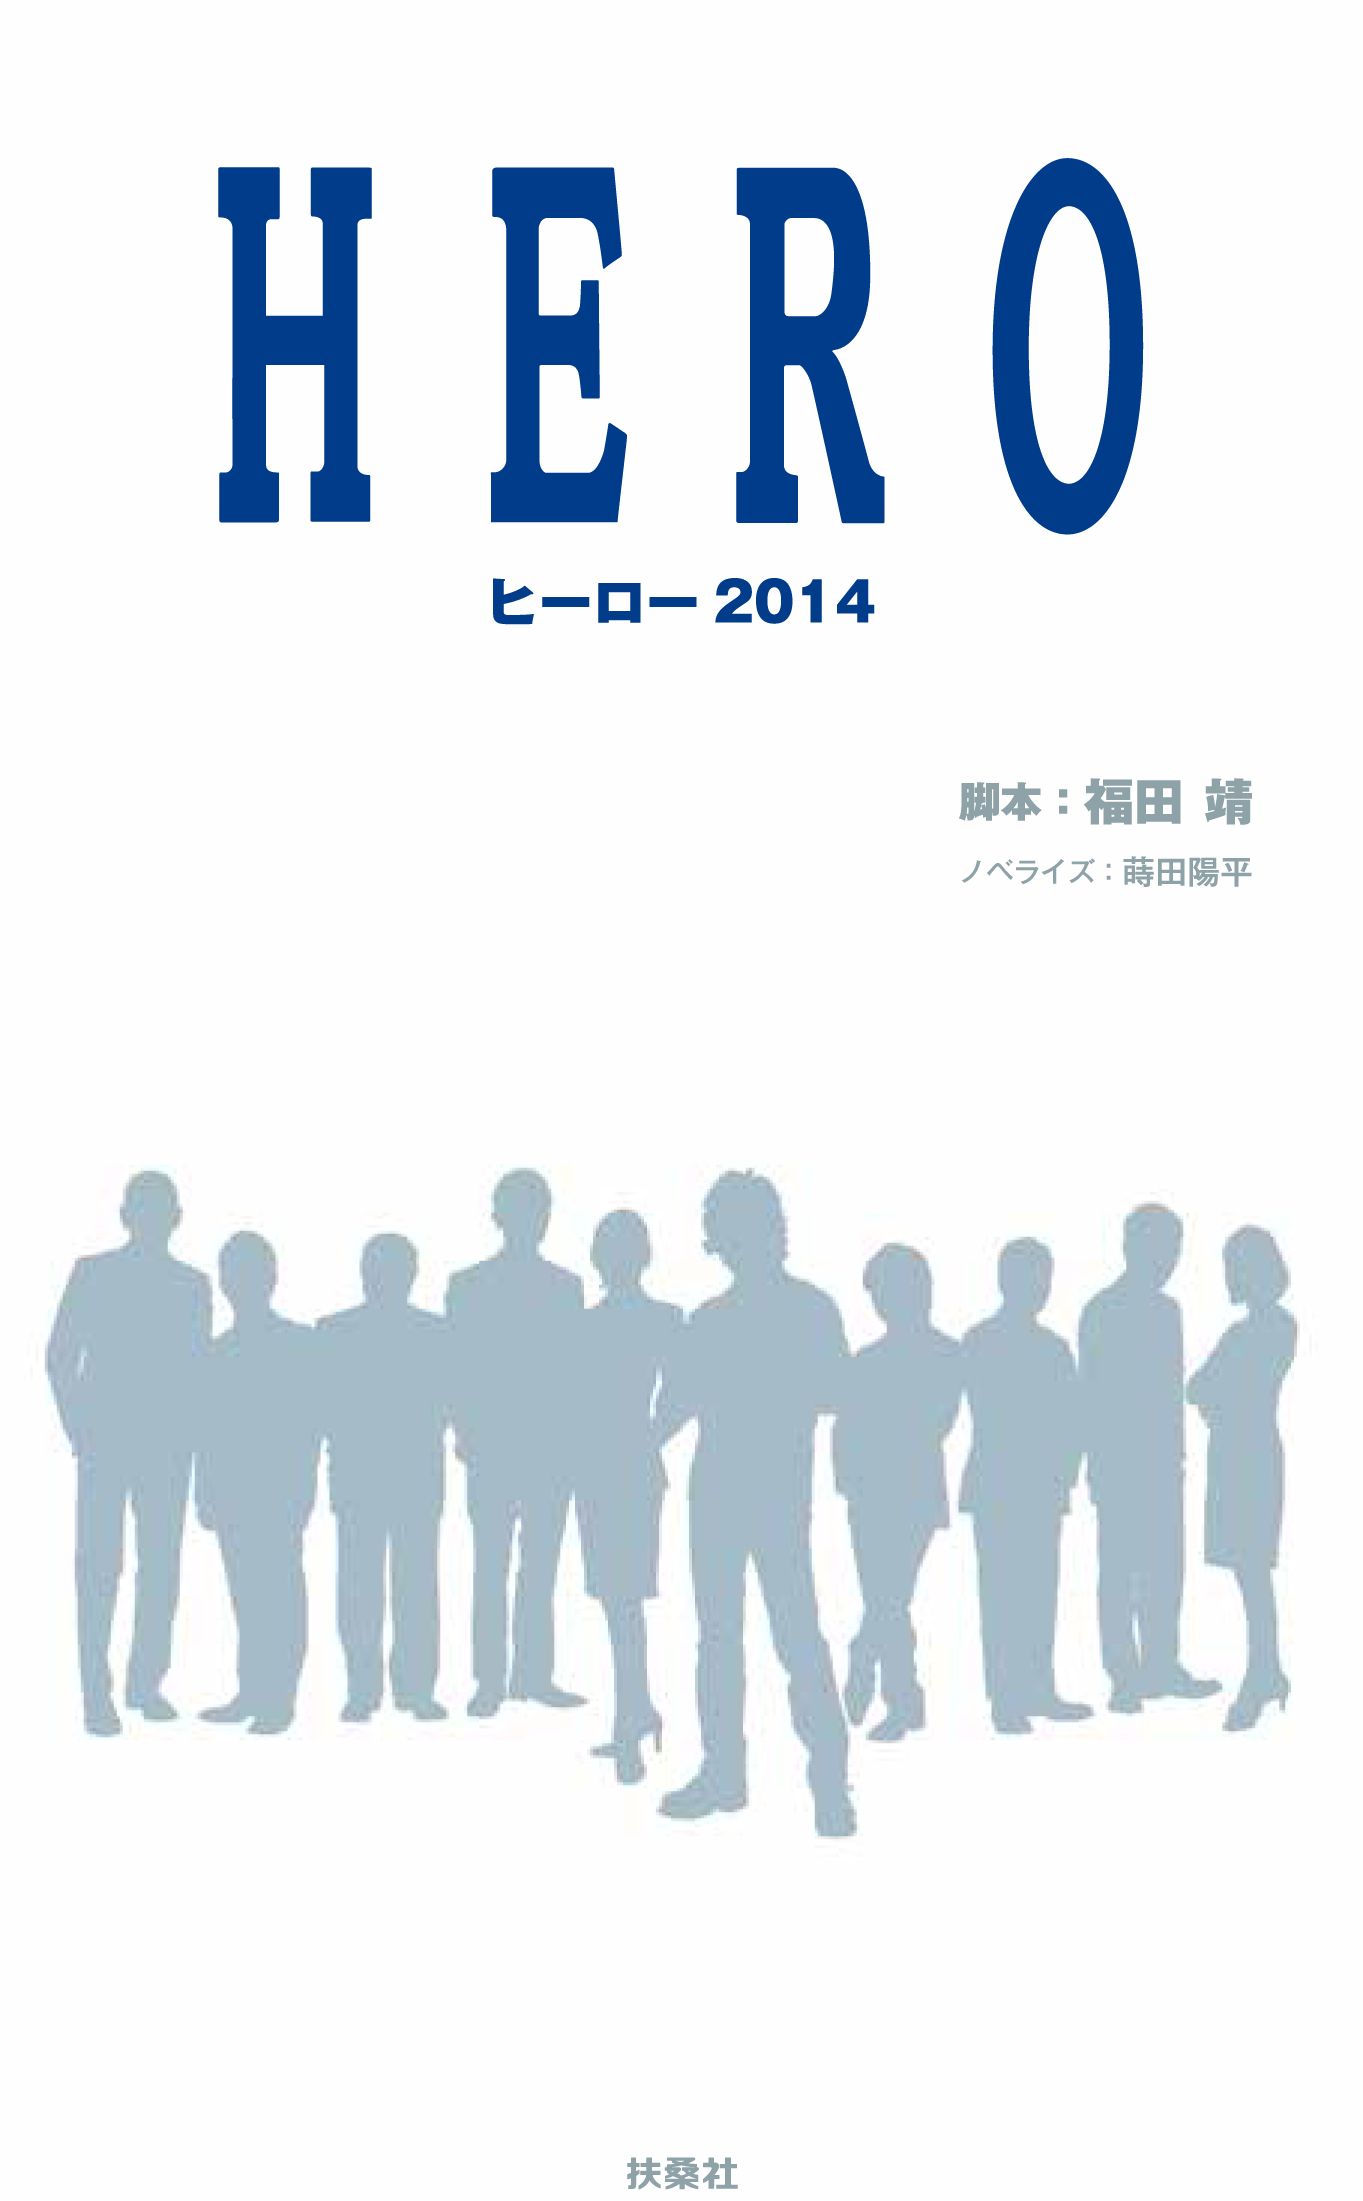 70以上 Hero ドラマ 動画 2期 4話 最高の画像壁紙日本am